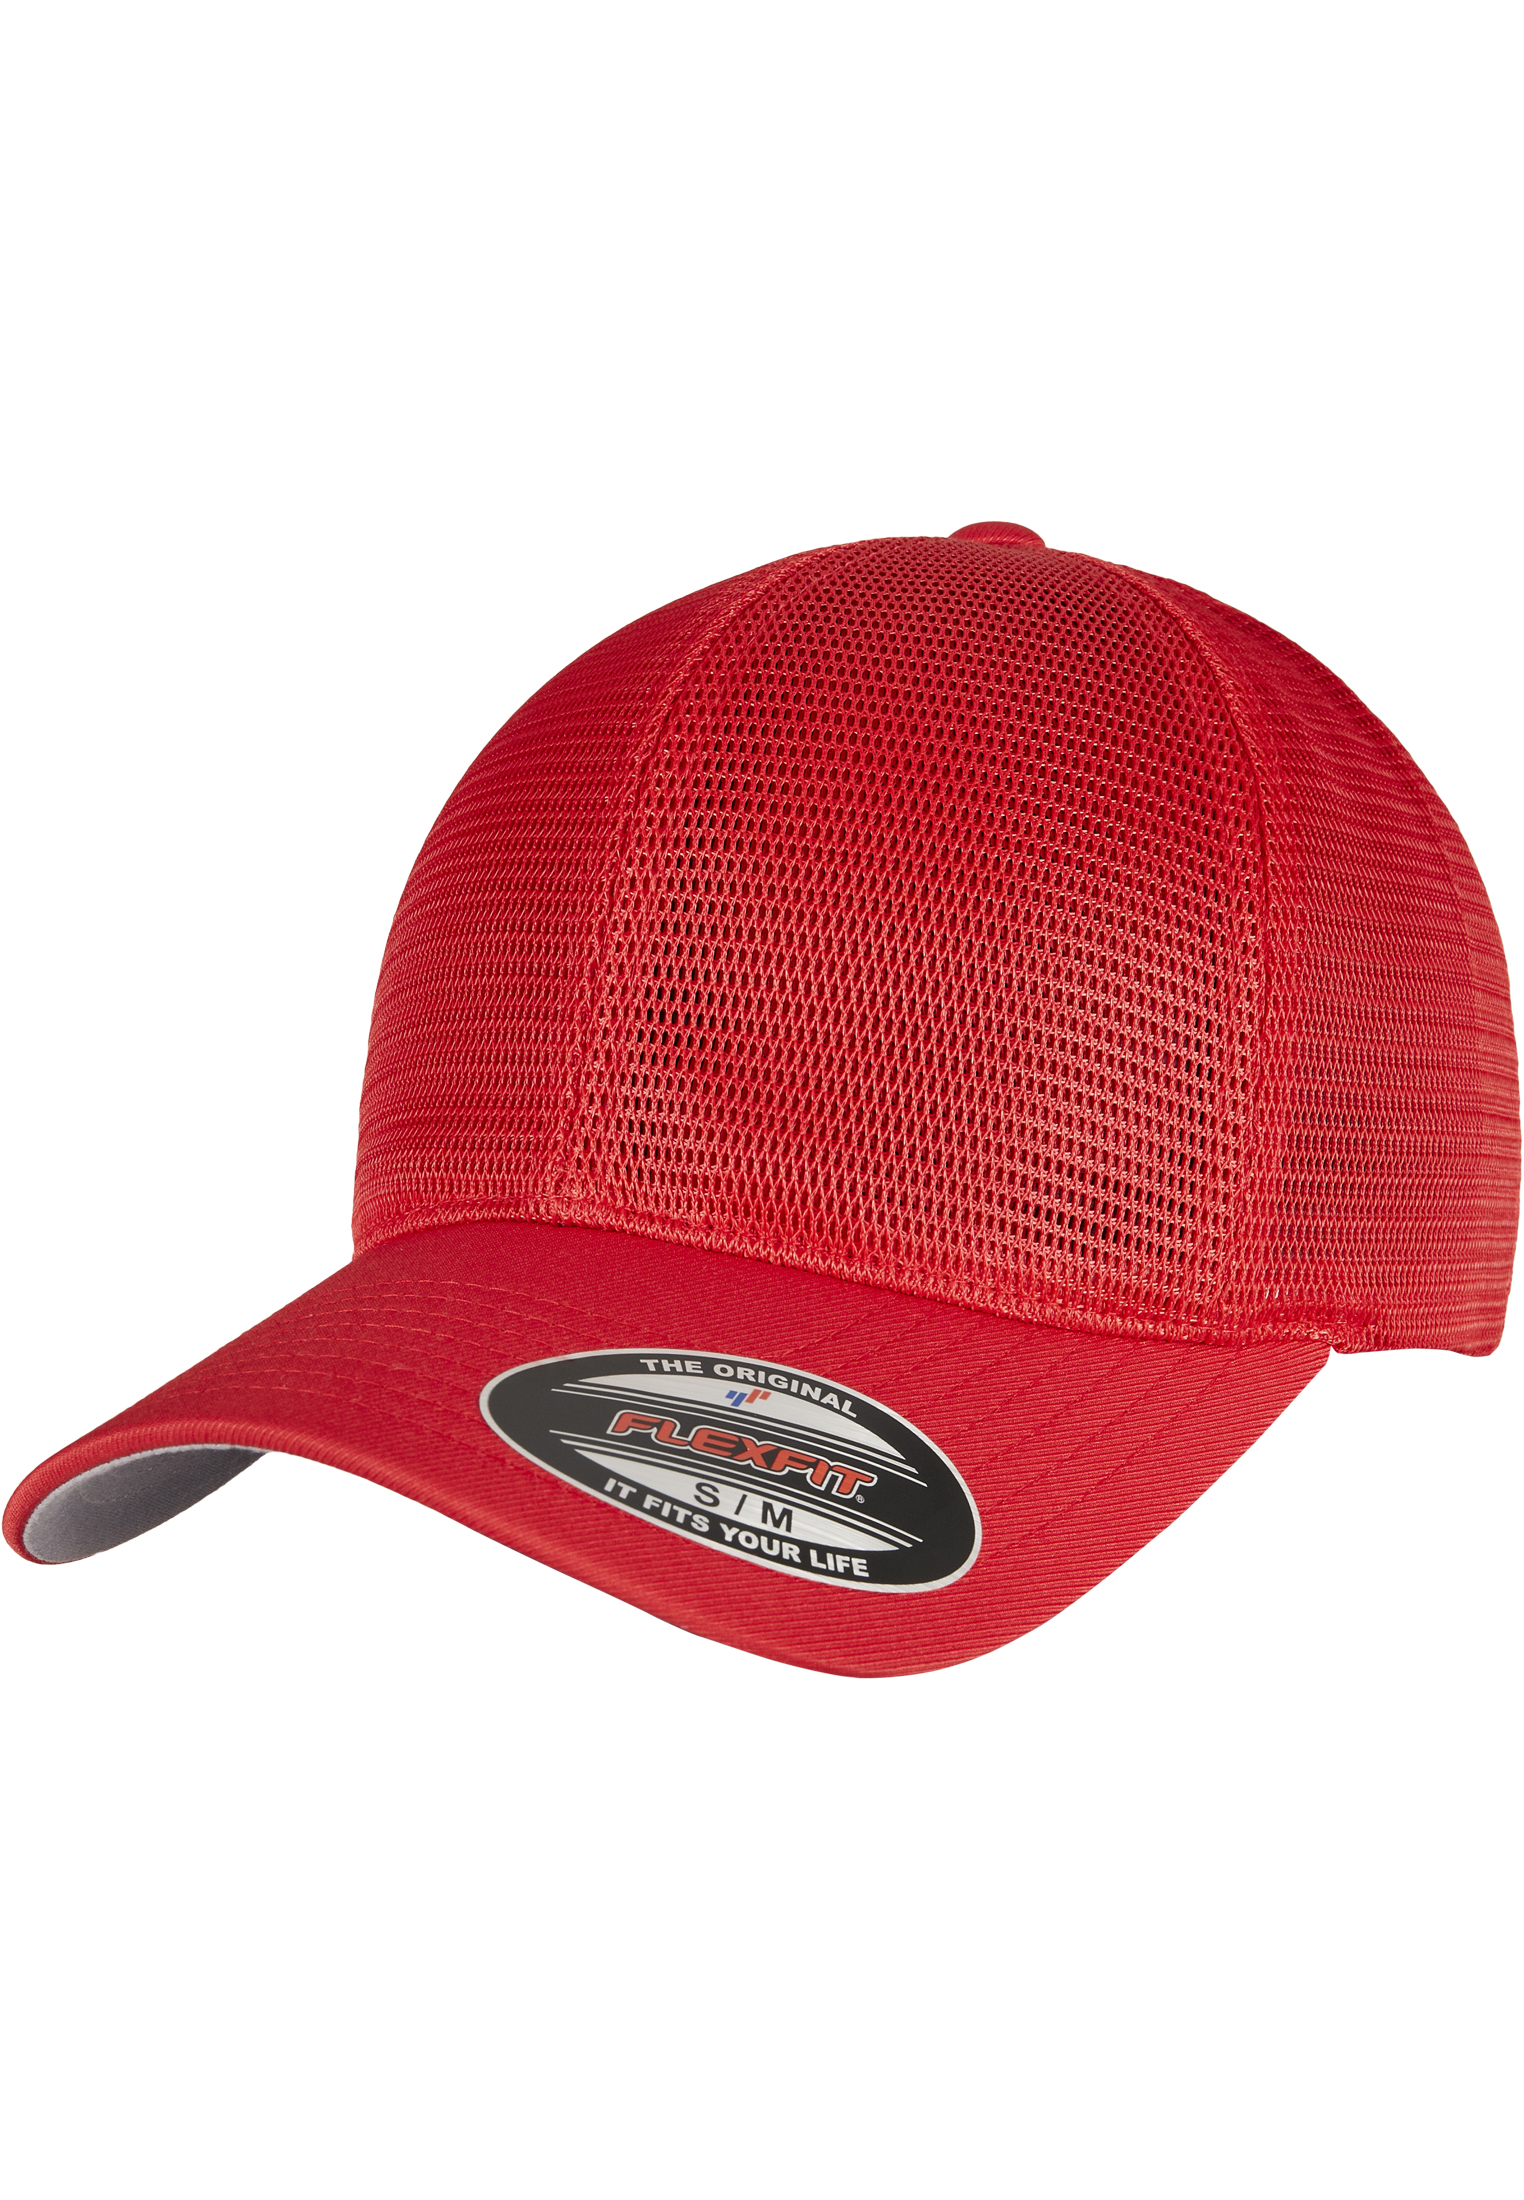 Trucker FLEXFIT 360 OMNIMESH CAP in Farbe red